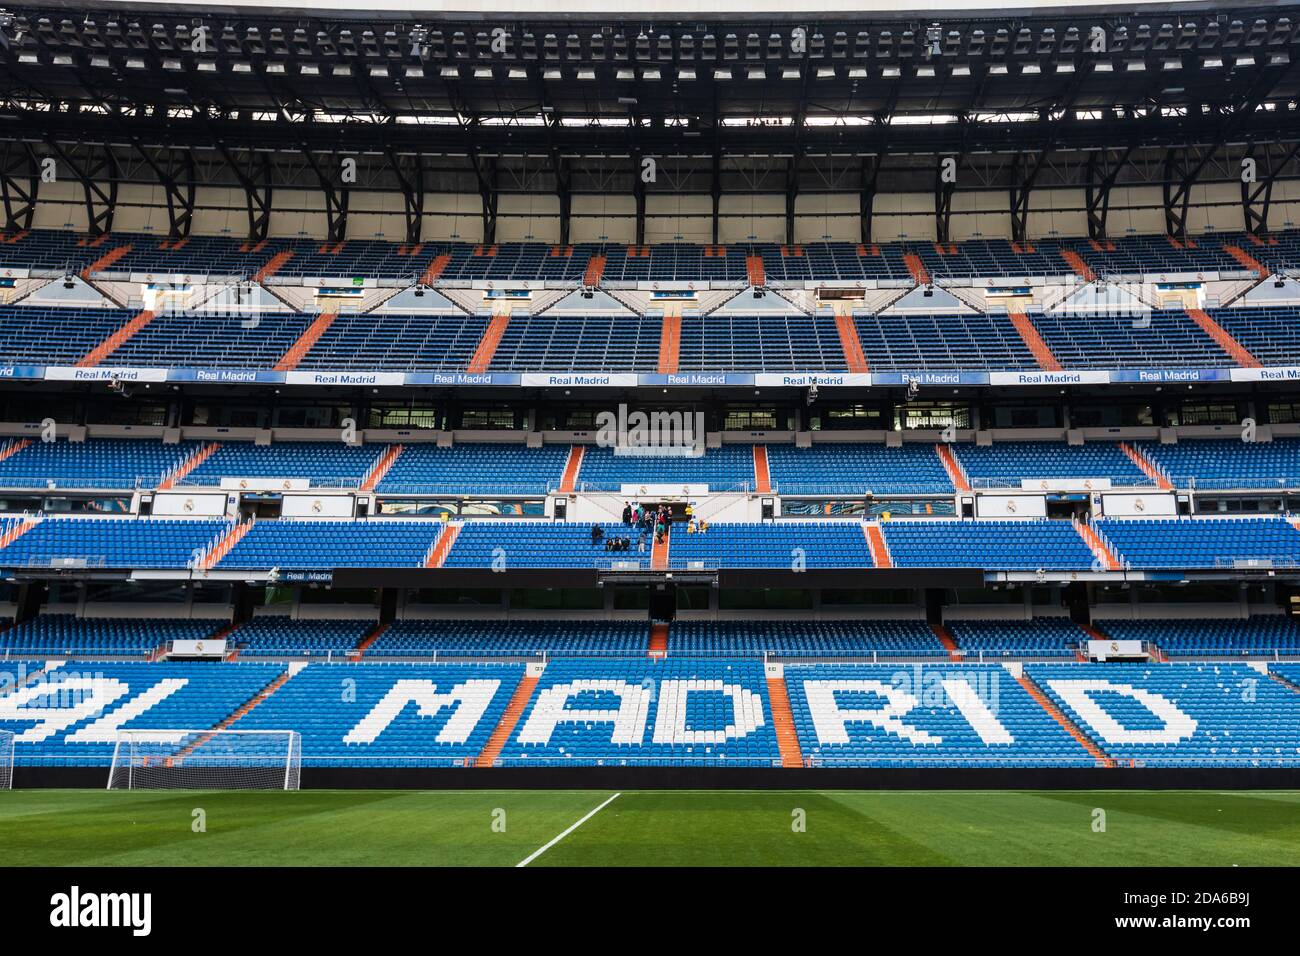 MADRID, ESPAÑA - Jun 04, 2018: Vista del estadio vacío Santiago Bernabeu, donde juega el equipo de fútbol del Real Madrid Foto de stock